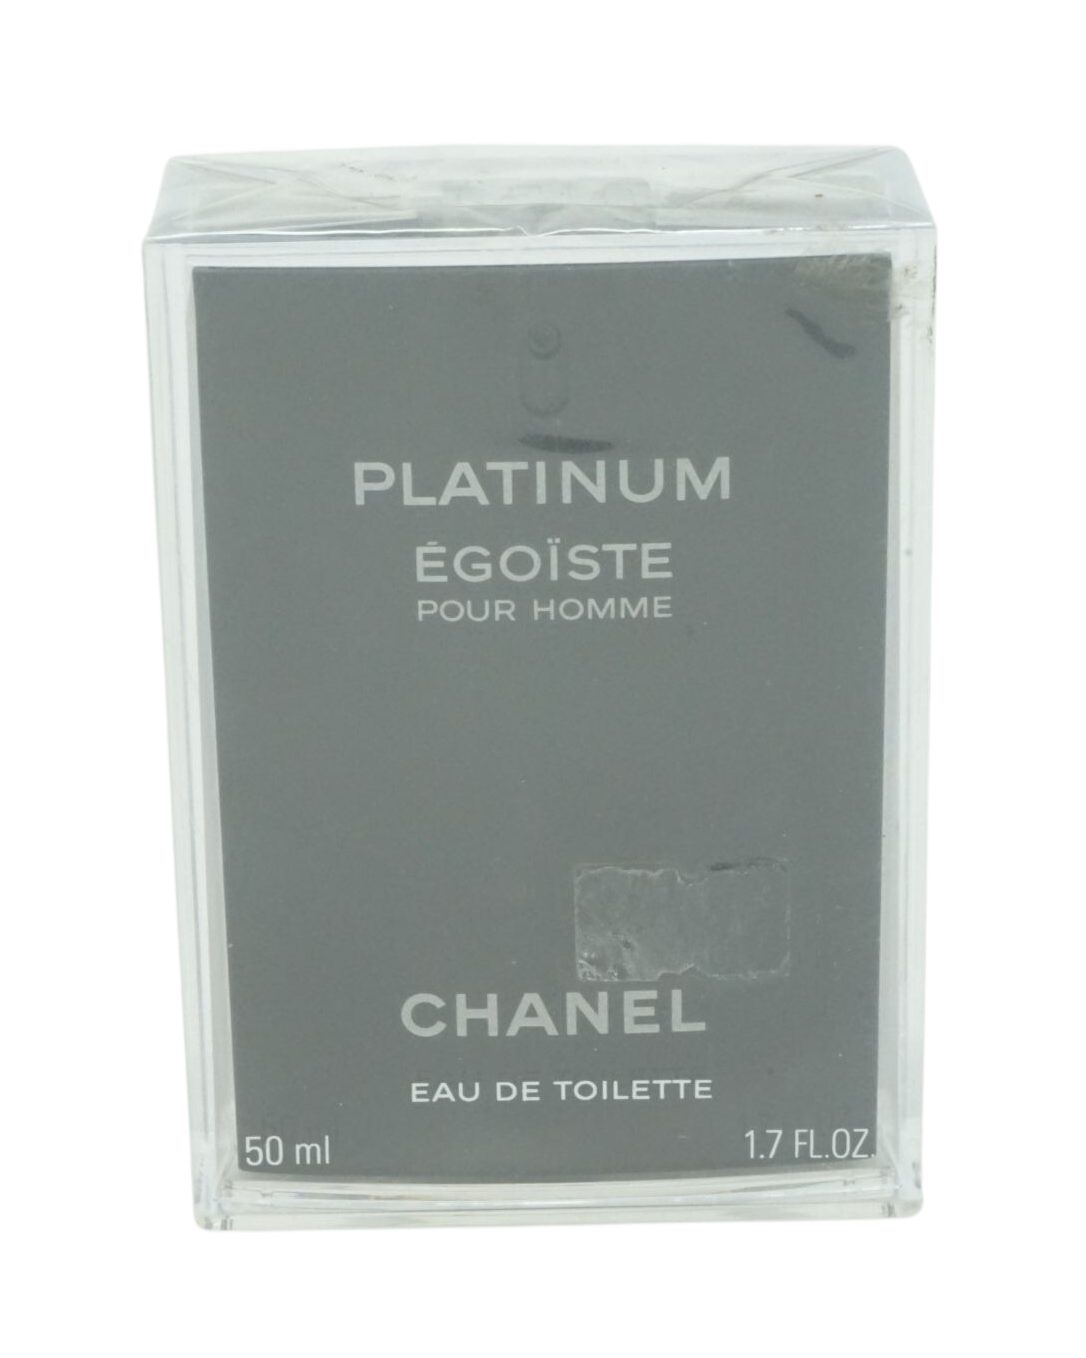 Eau Chanel de Eau Egoiste de CHANEL Homme 50ml Pour Toilette Platinum Toilette